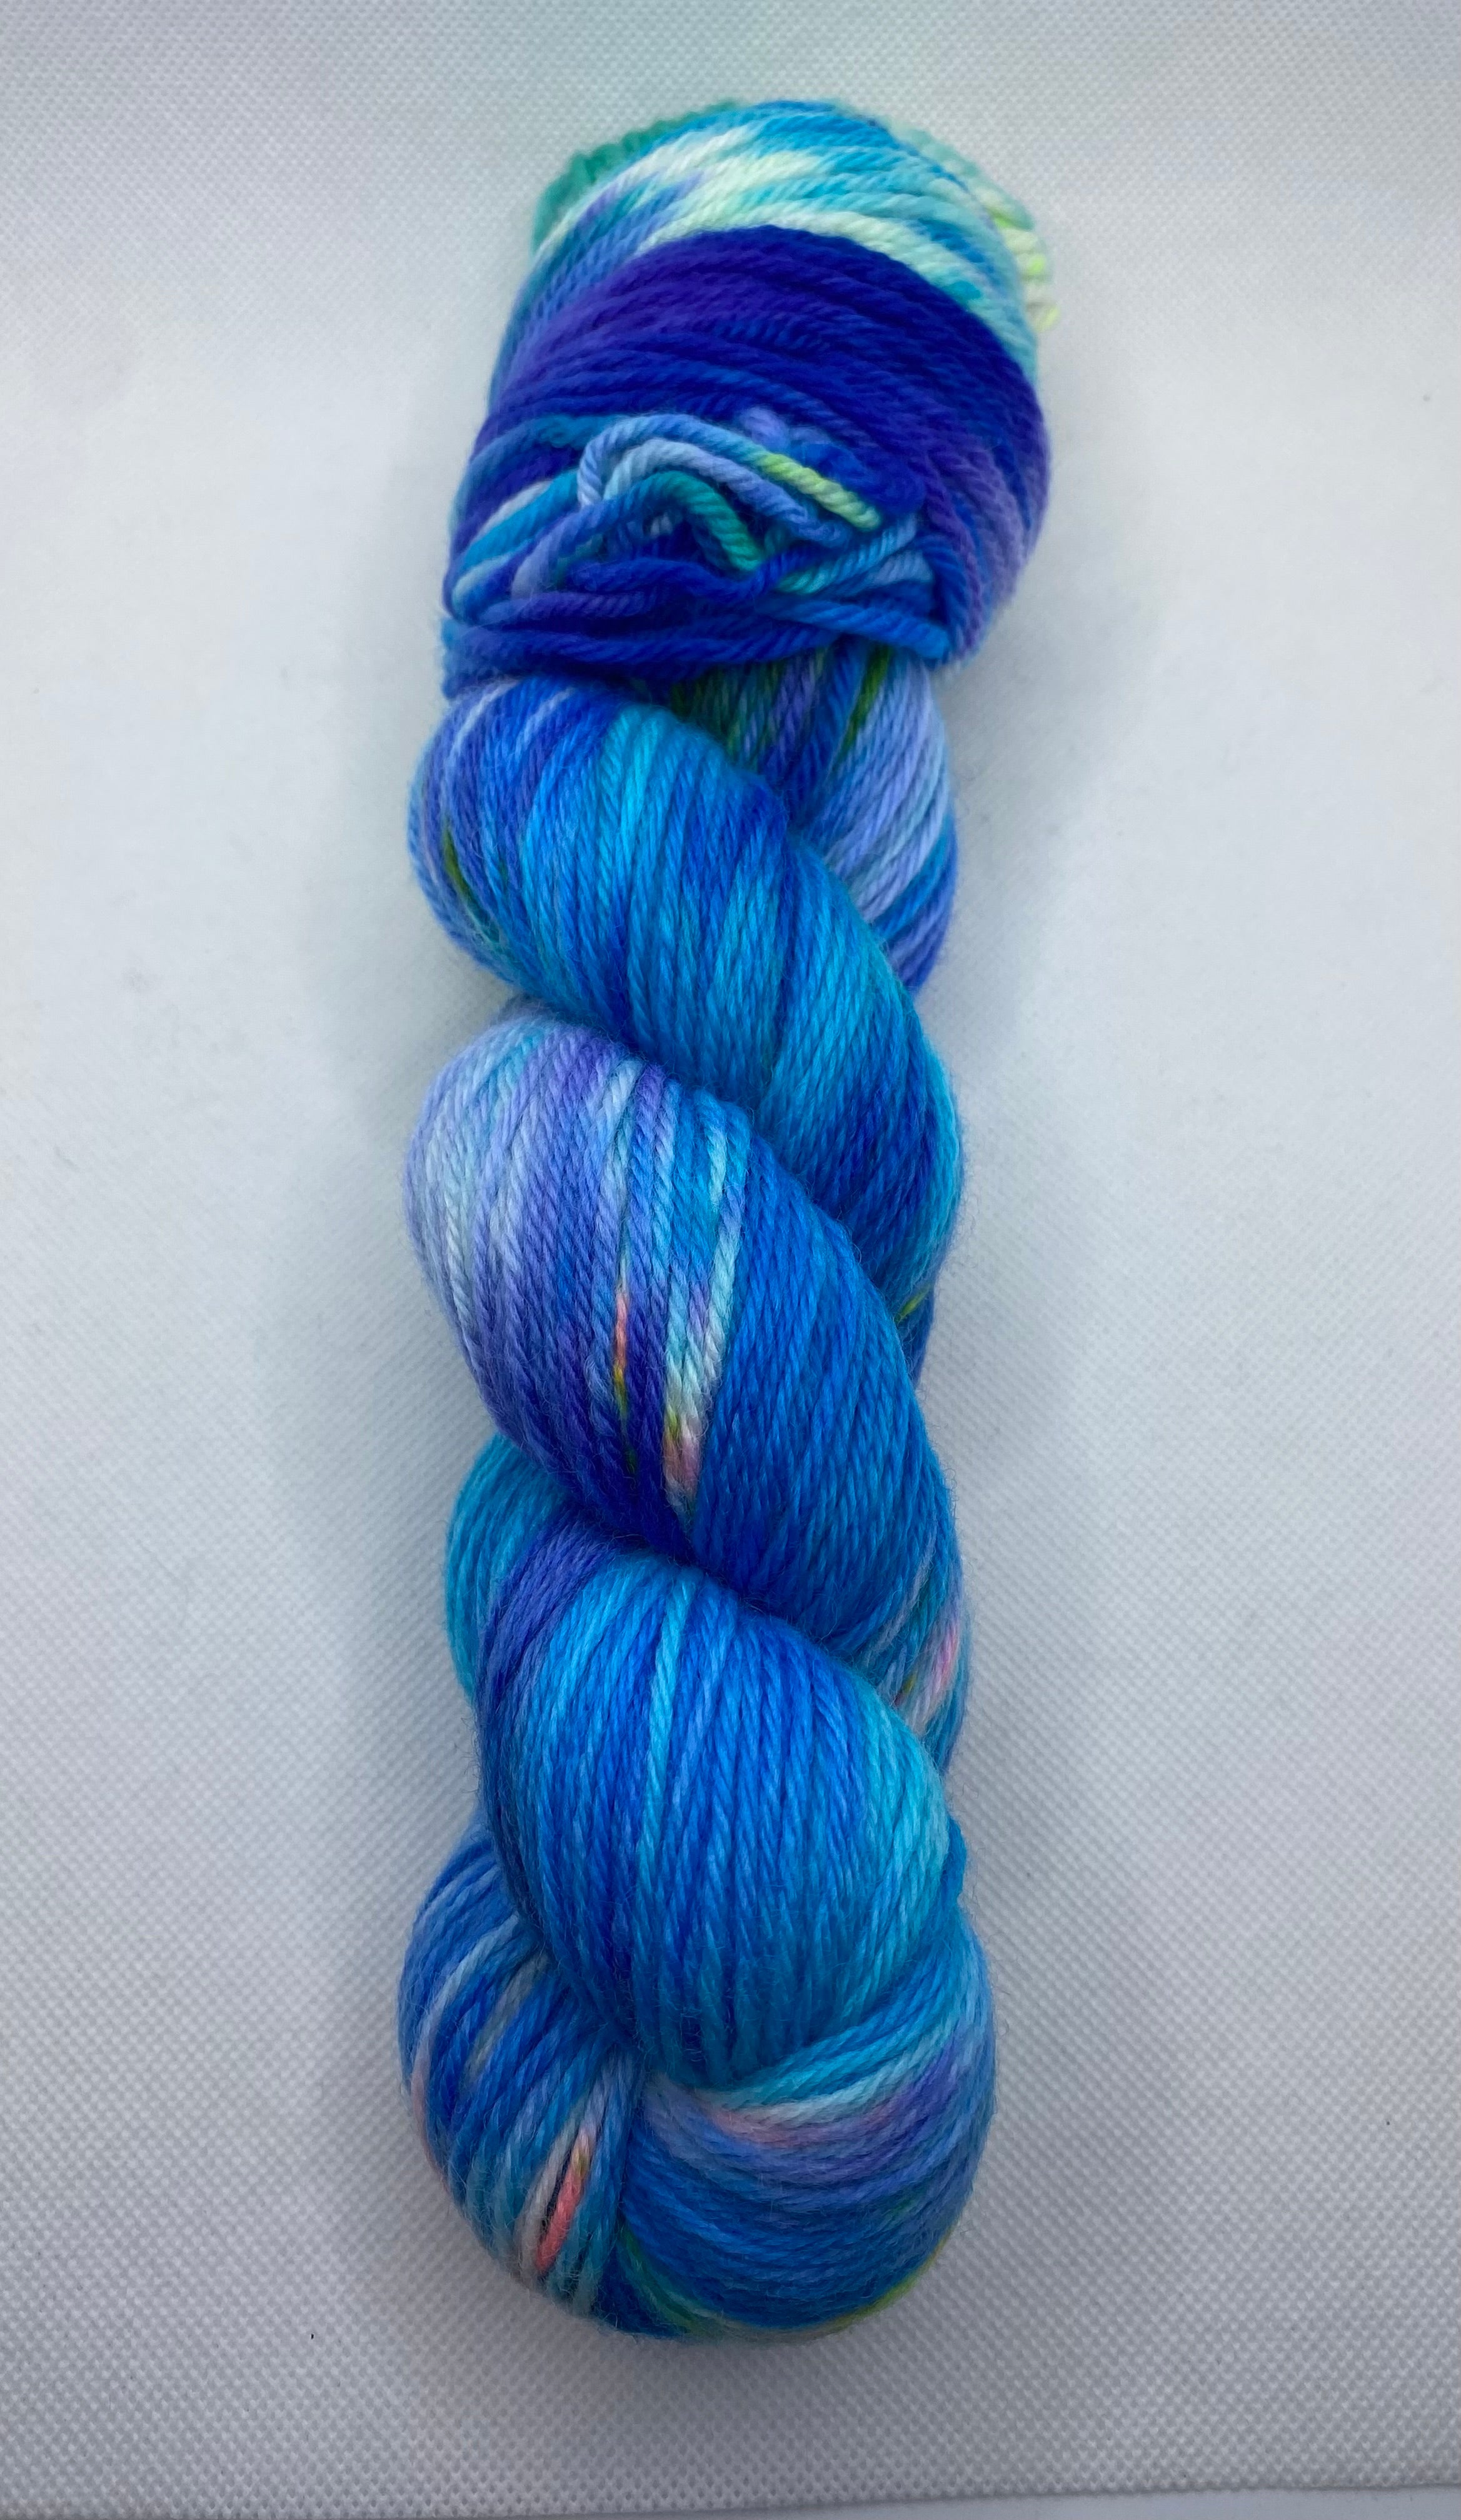 No Dye Left Behind ”Blue Swirl” Non Superwash Hand Dyed Yarn